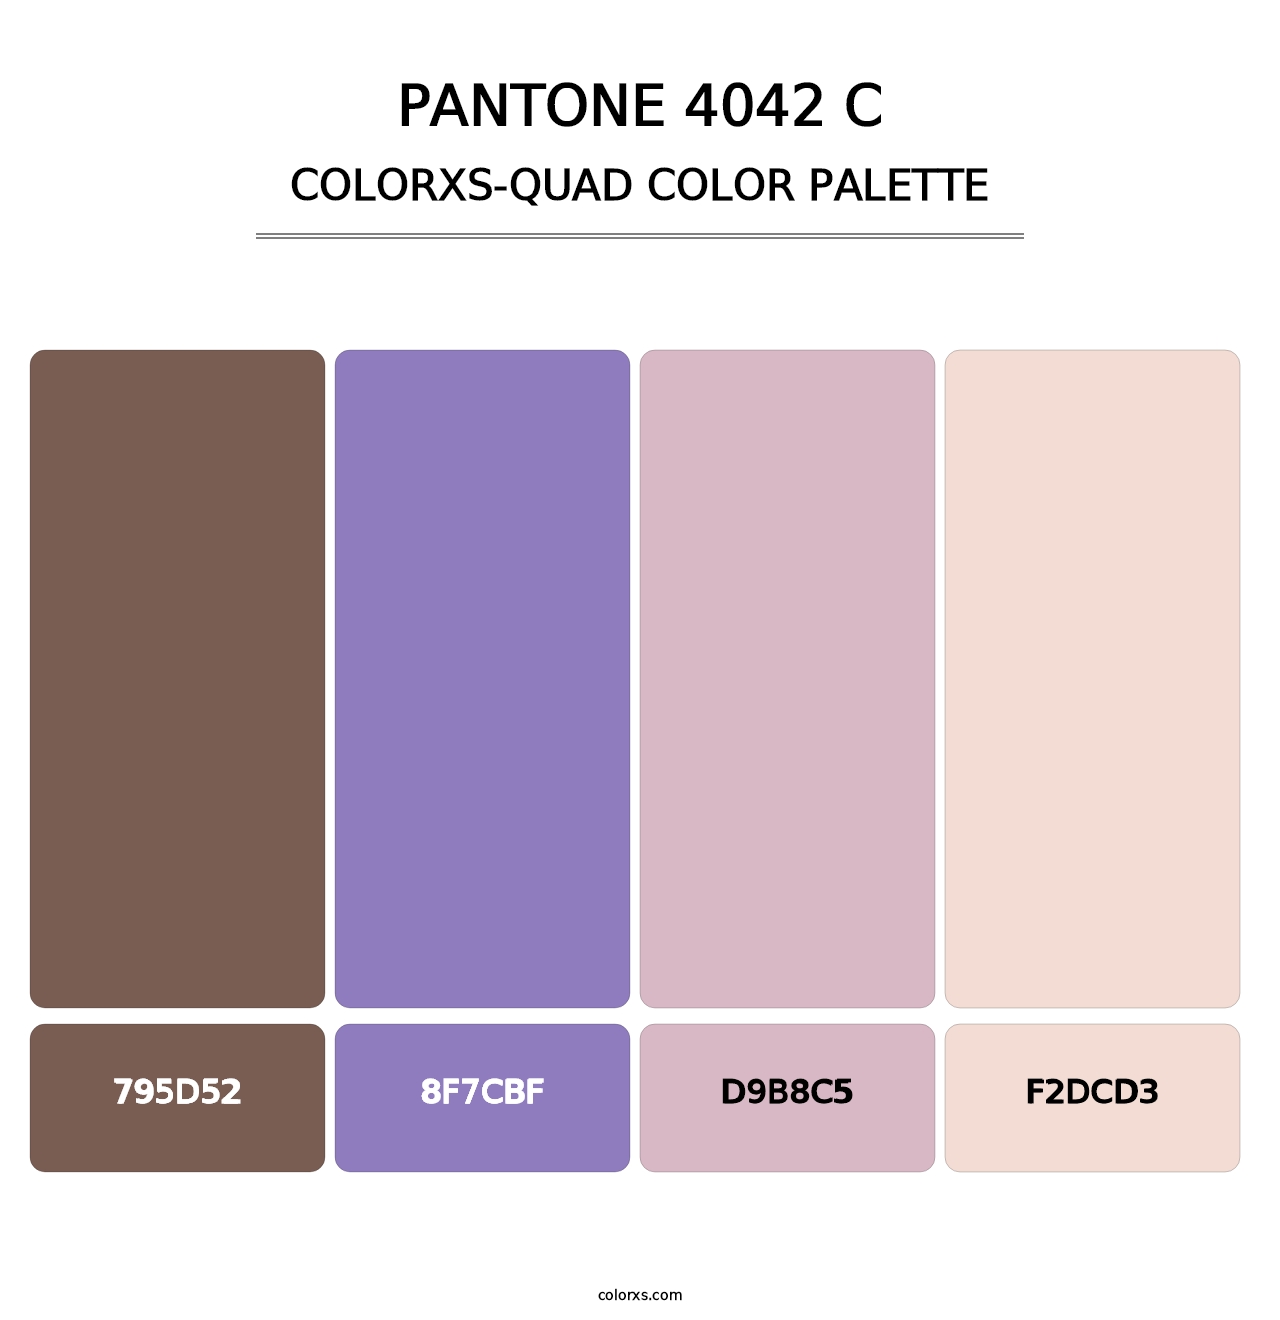 PANTONE 4042 C - Colorxs Quad Palette